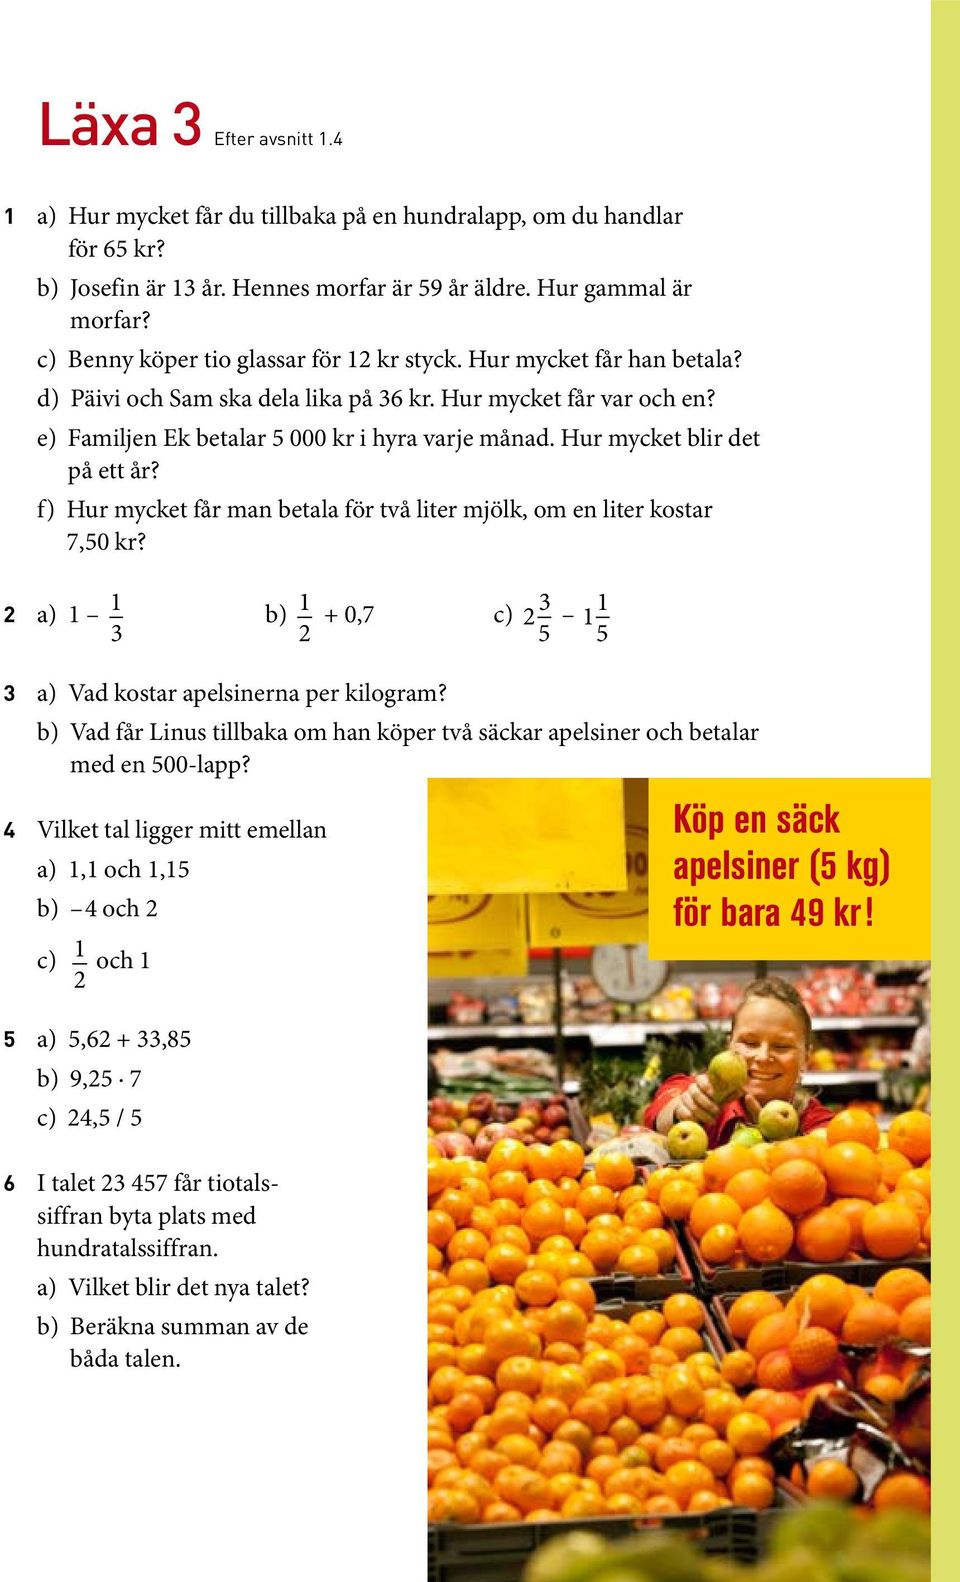 Hur mycket blir det på ett år? f) Hur mycket får man betala för två liter mjölk, om en liter kostar 7,50 kr? 2 a) 1 1 3 b) 1 2 + 0,7 c) 2 3 5 1 1 5 3 a) Vad kostar apelsinerna per kilogram?